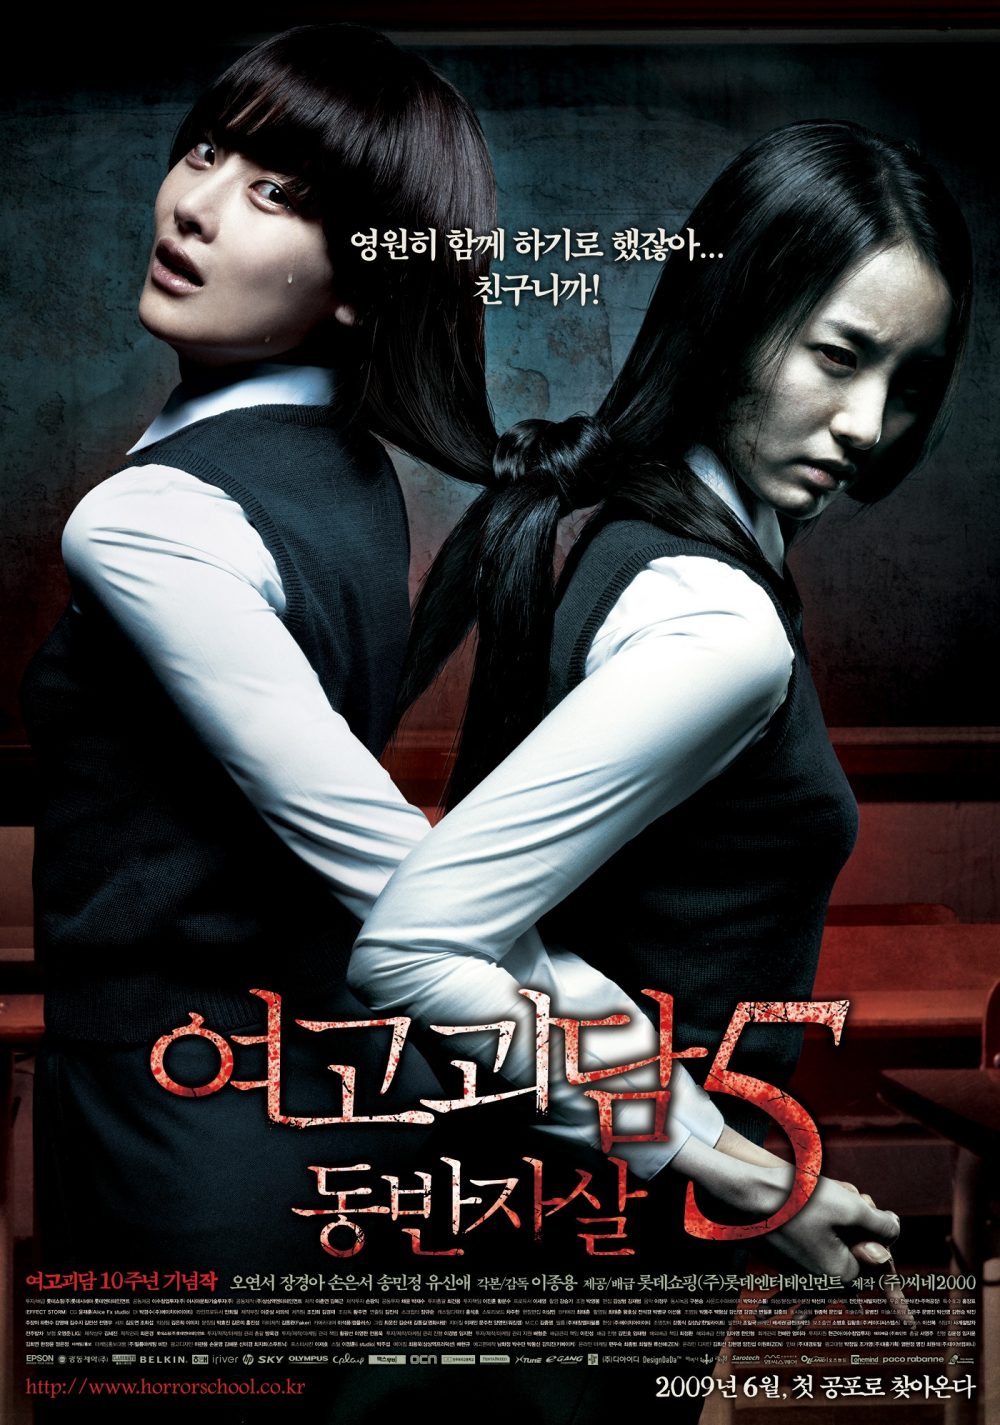 Phim quái kinh dị Nước Hàn hoặc nhất từng thời đại: Hành bác sĩ thì âm thầm - Whispering Corridors (1998)